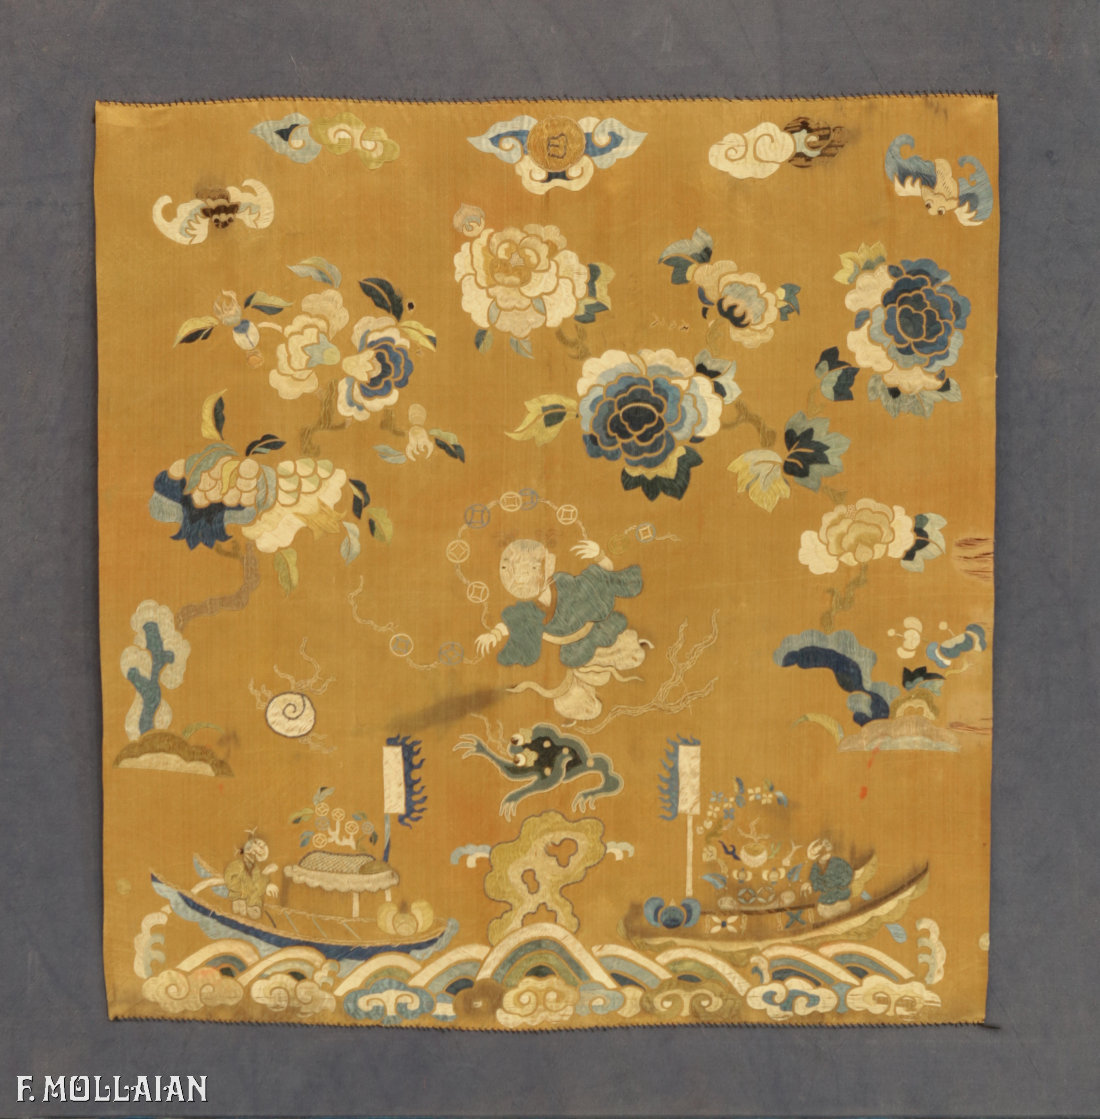 Textil Chinesischer Antiker Seide n°:80382994